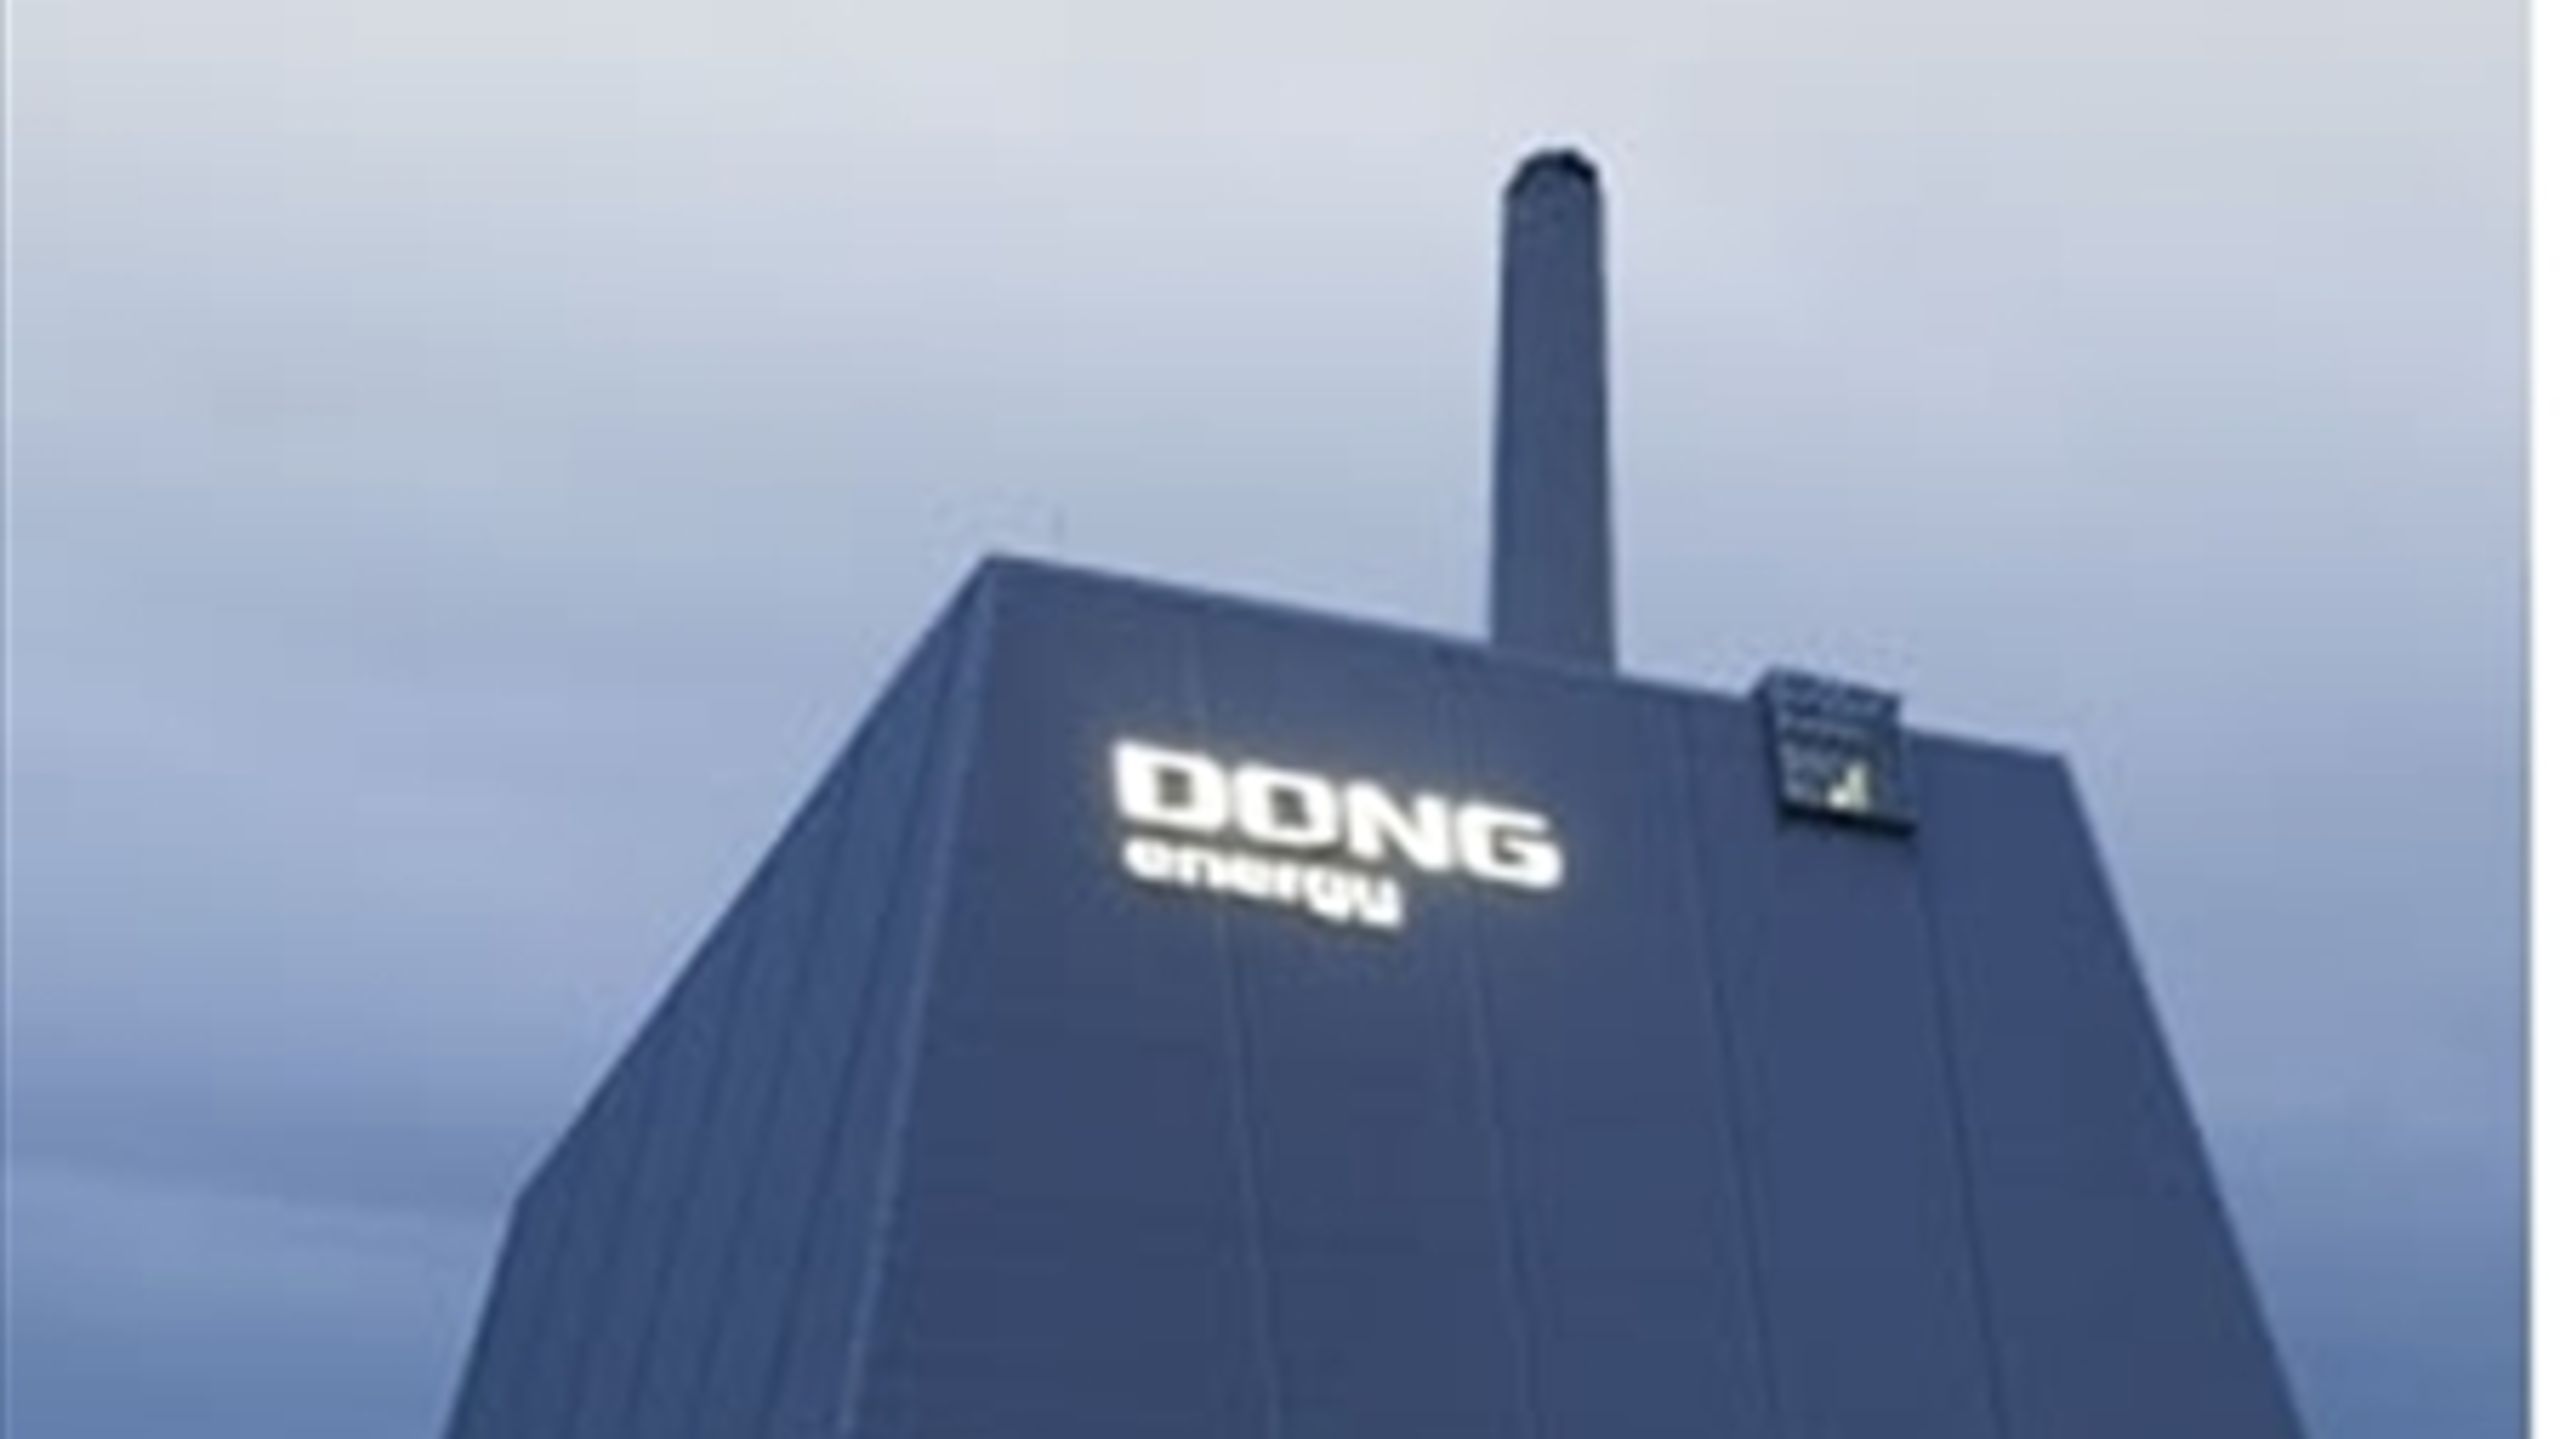 Rigsrevisionen foreslår at dele Dong-undersøgelsen op i to. Dongs elpriser bliver en selvstændig undersøgelse.